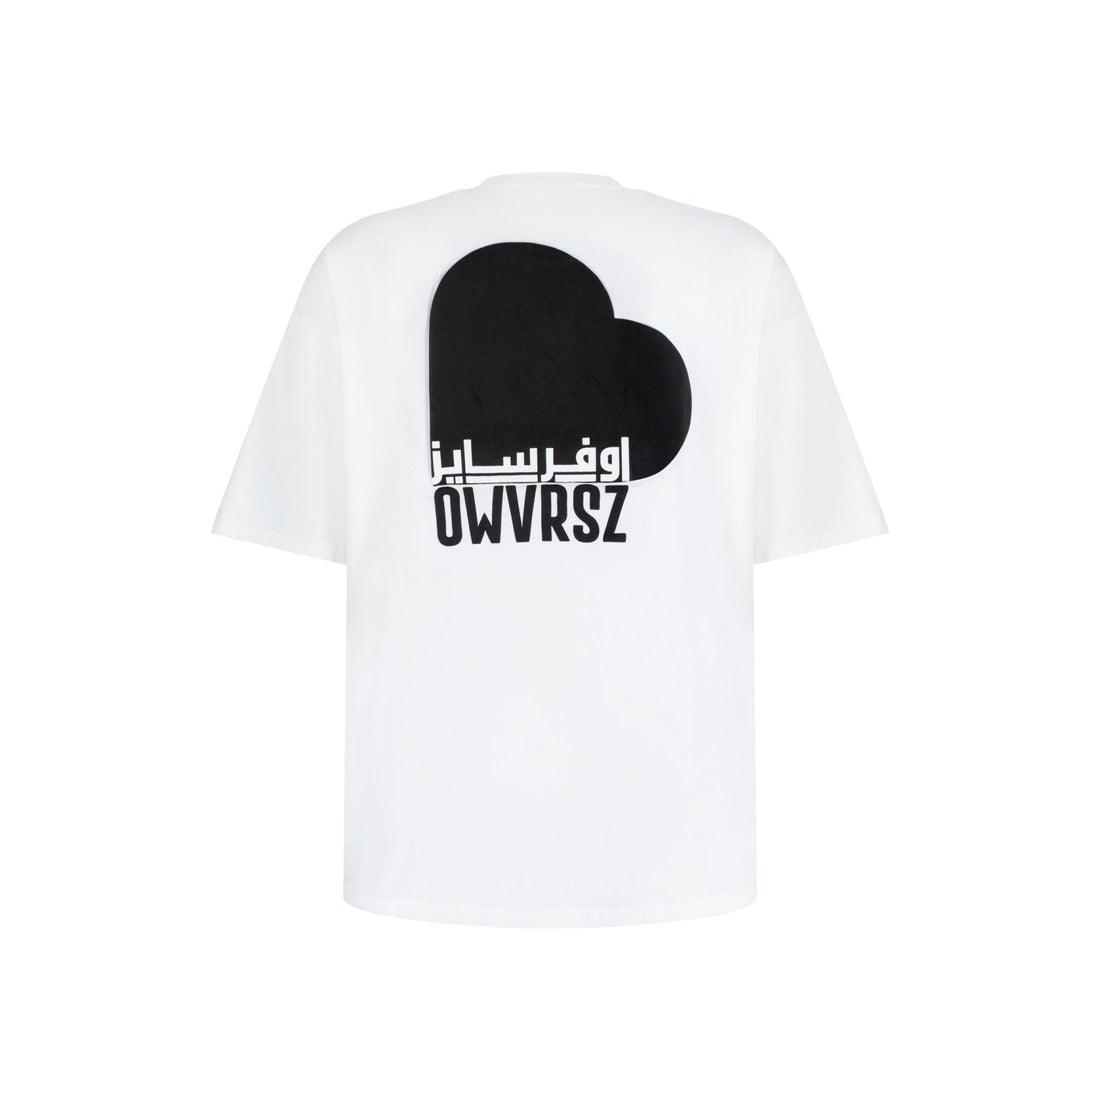 Love Edition White Tshirt - OWVRSZ